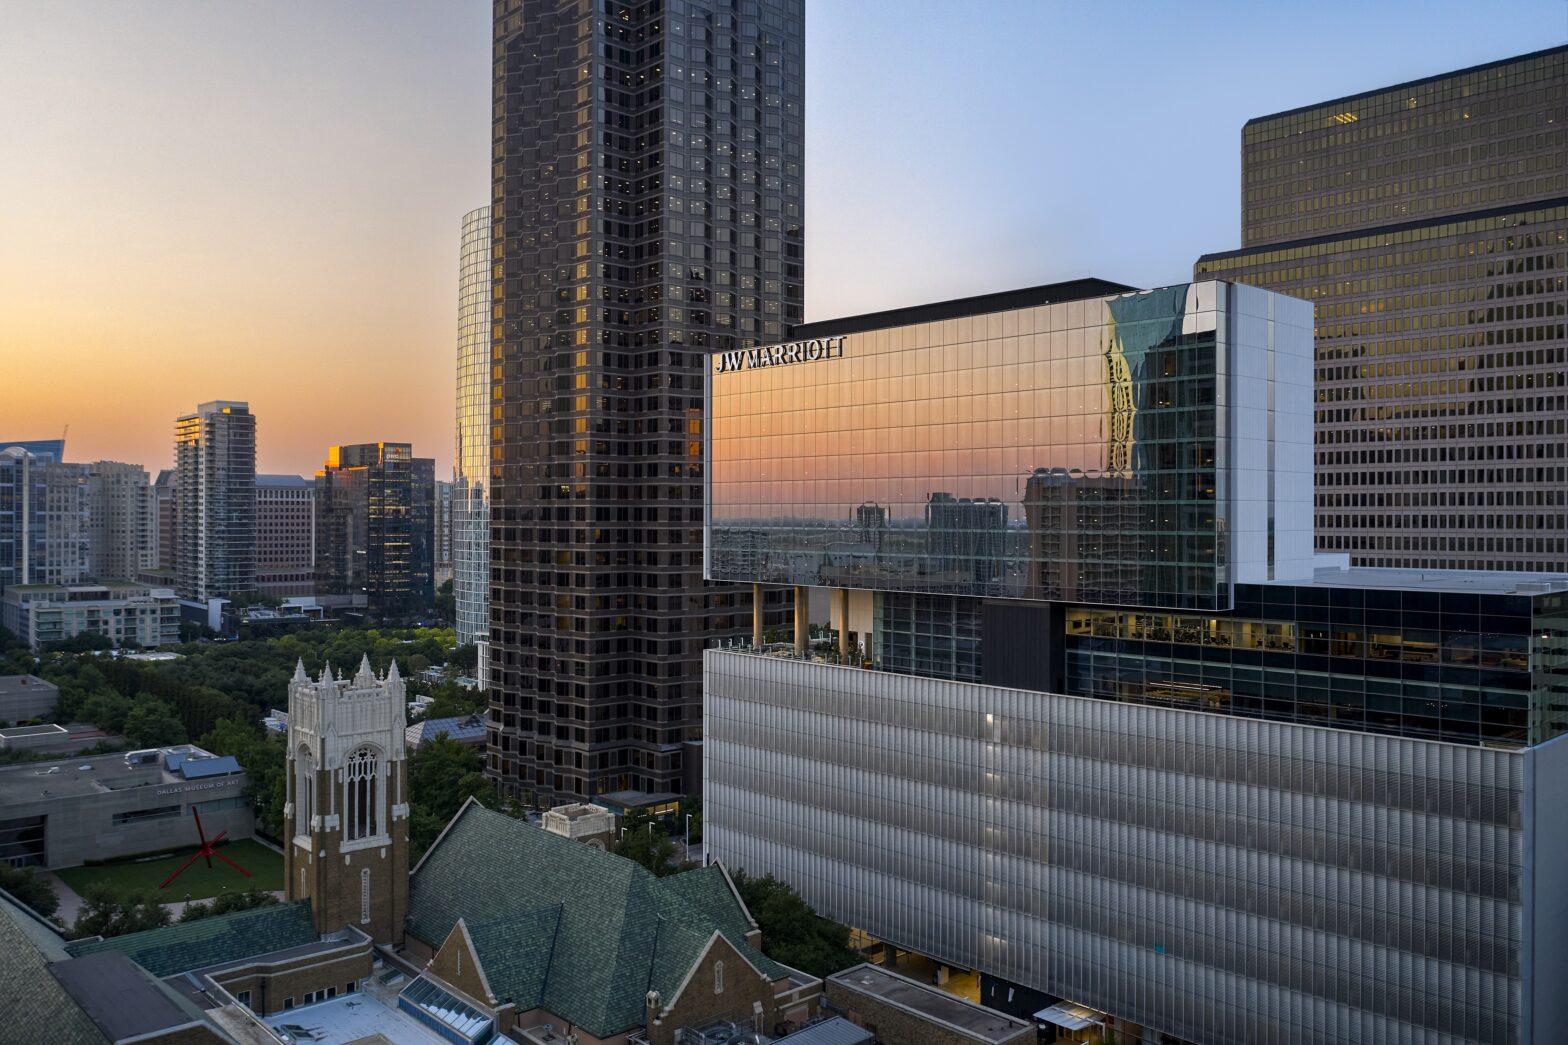 JW Marriott Hotel Debuts in Dallas